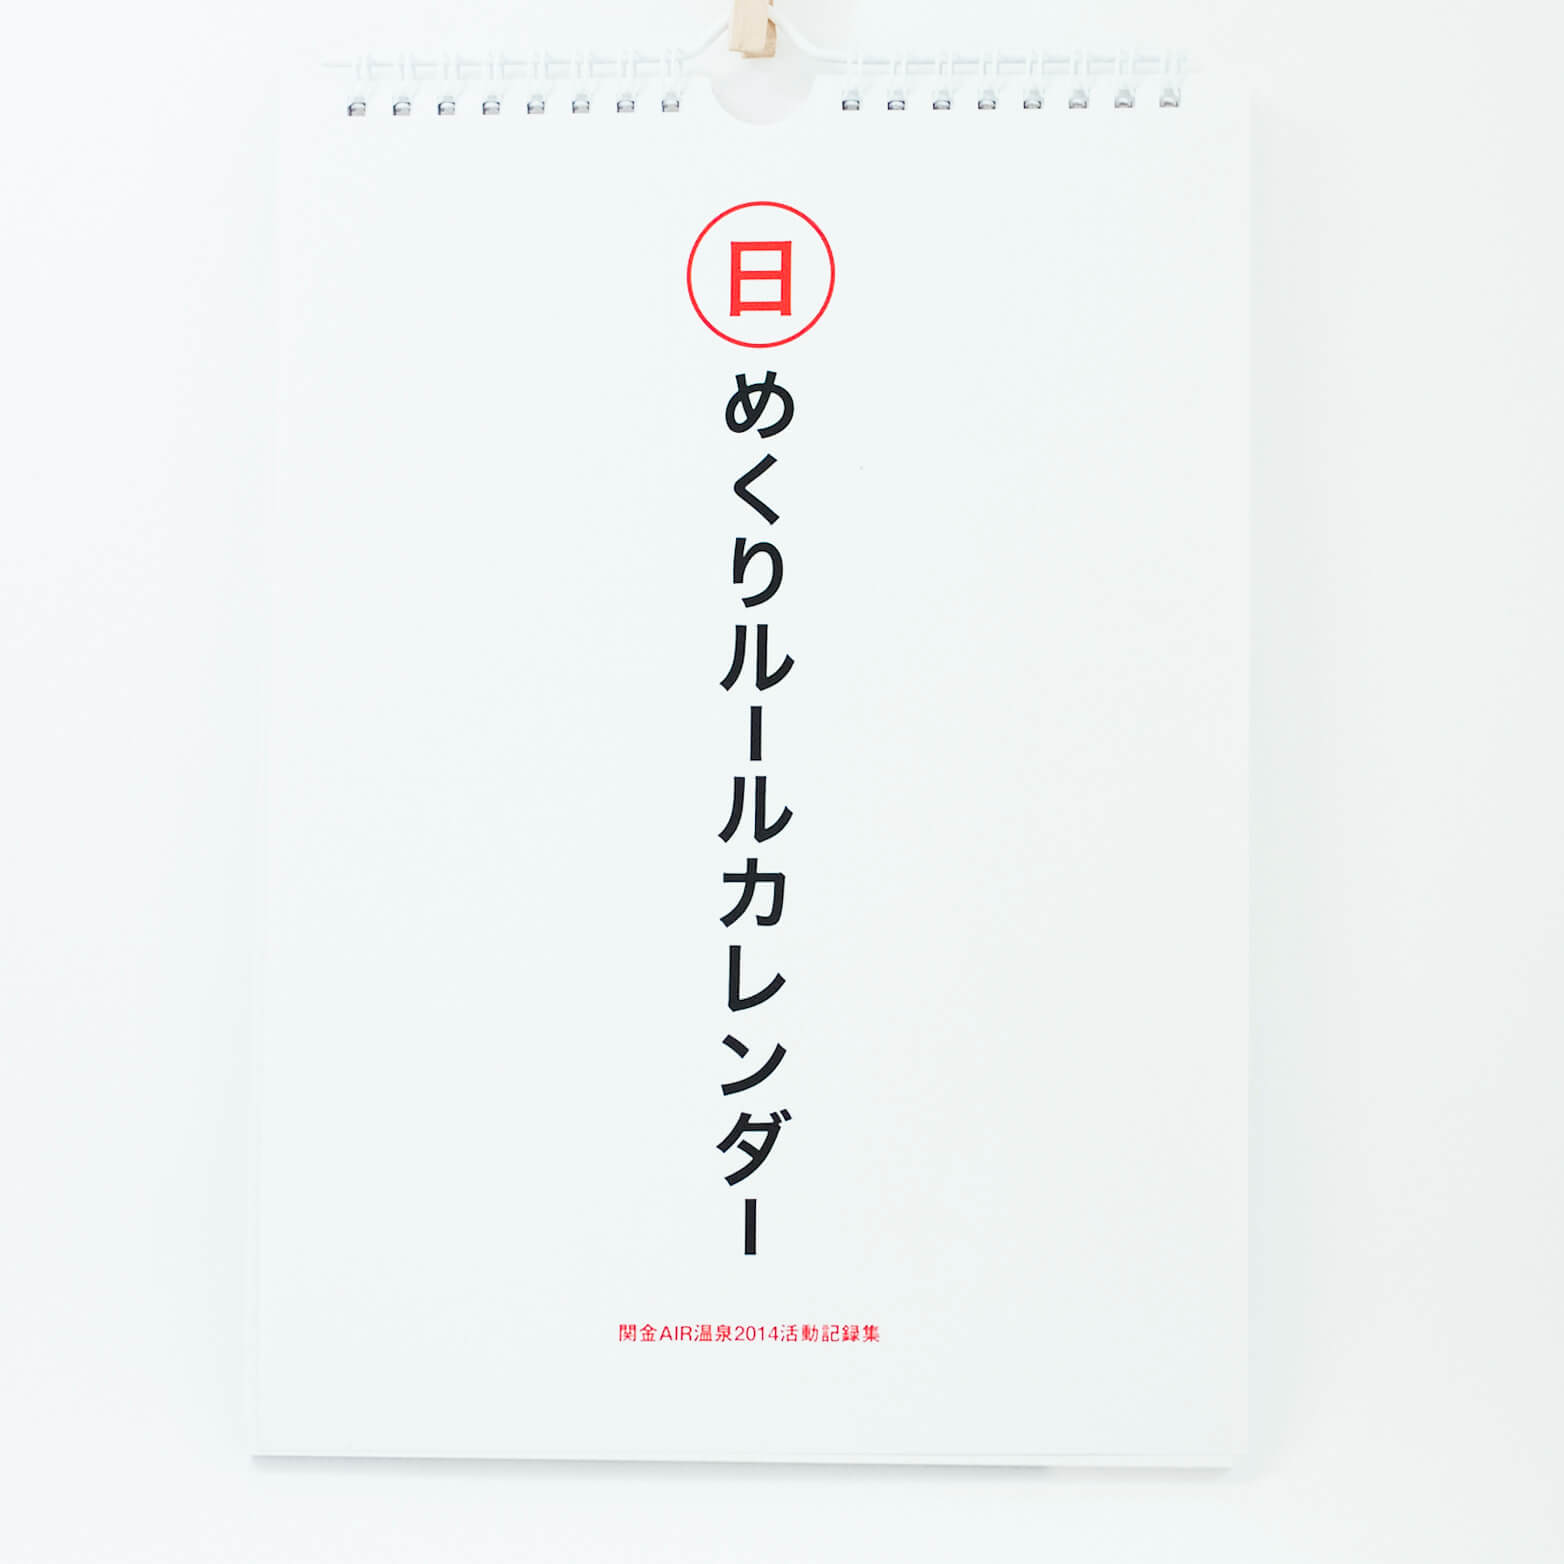 「大野 沙耶香 様」製作のオリジナルカレンダー